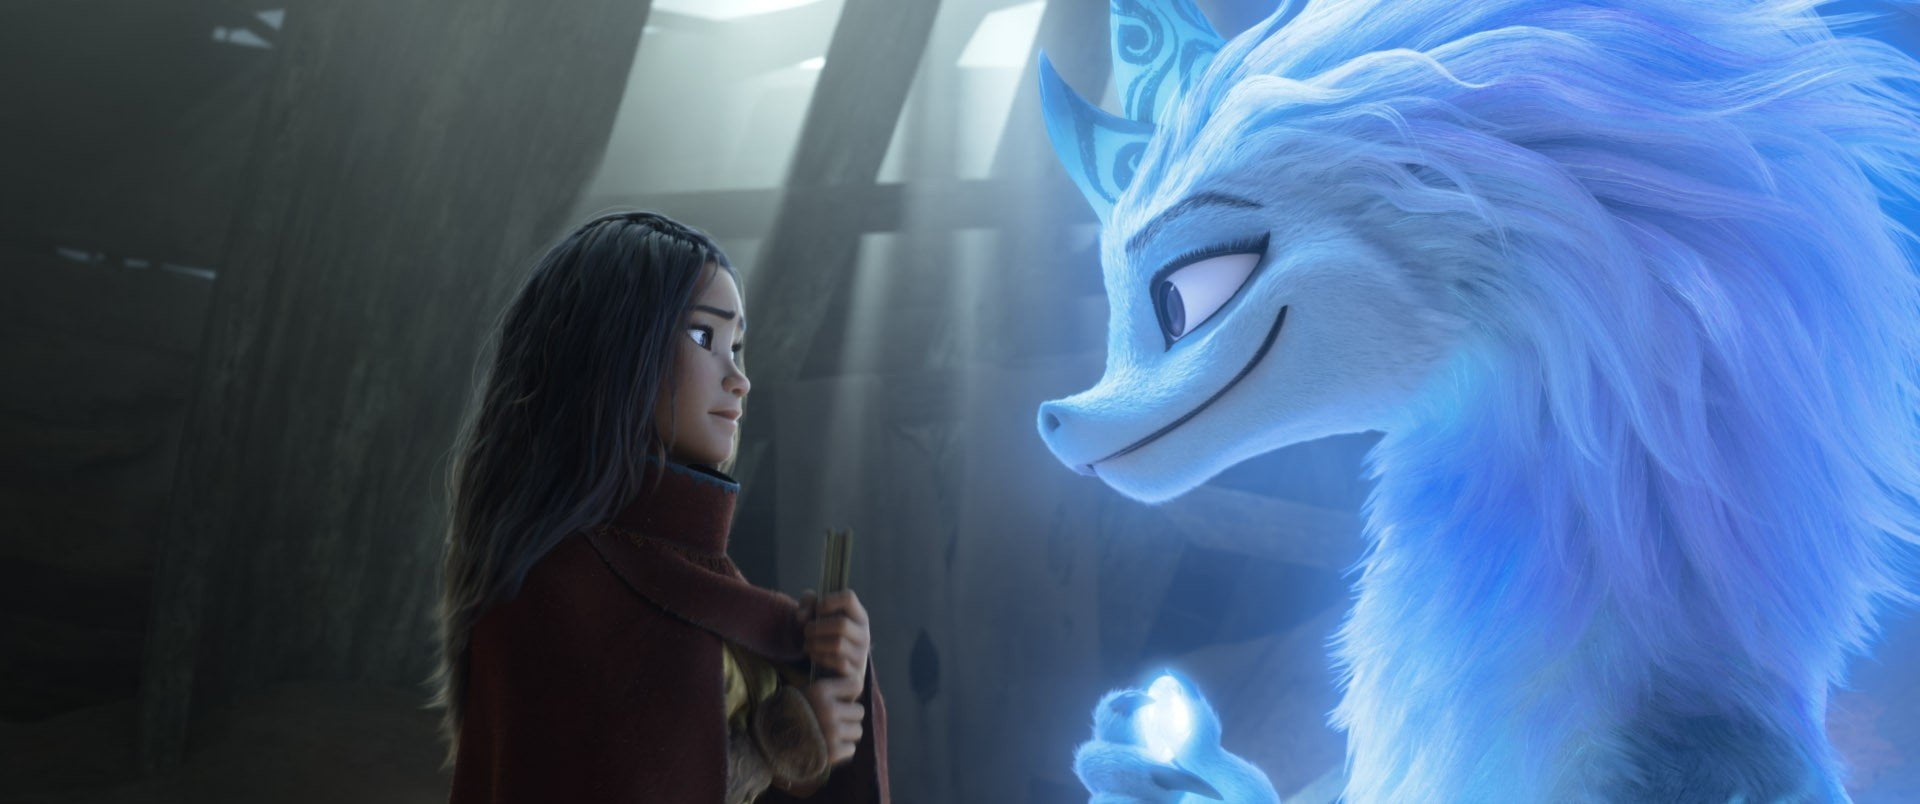 'Raya y el último dragón': nuevo tráiler revela estreno simultáneo del film en cines y Disney+